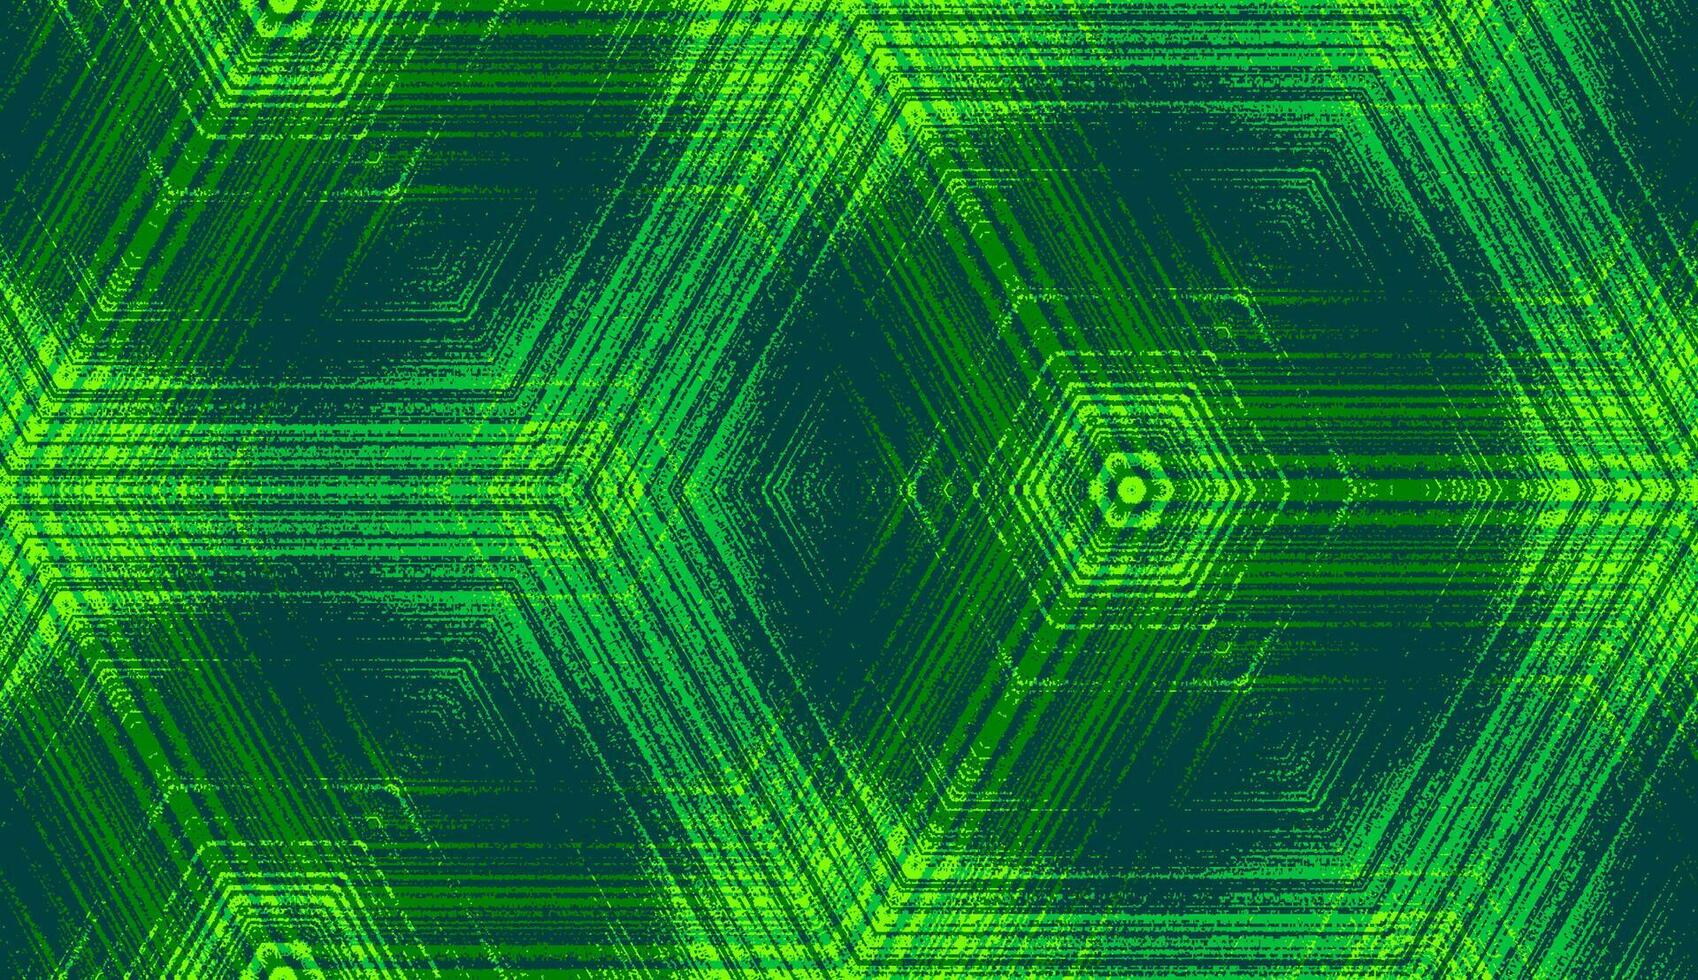 nahtlos Hexagon konzentrisch texturiert Muster im Chartreuse, Smaragd, Jade, Limette Grün Farben. symmetrisch abstrakt geometrisch Ornament zum Hintergrund Hintergrund Design, Textil- Drucken, Verpackung. vektor